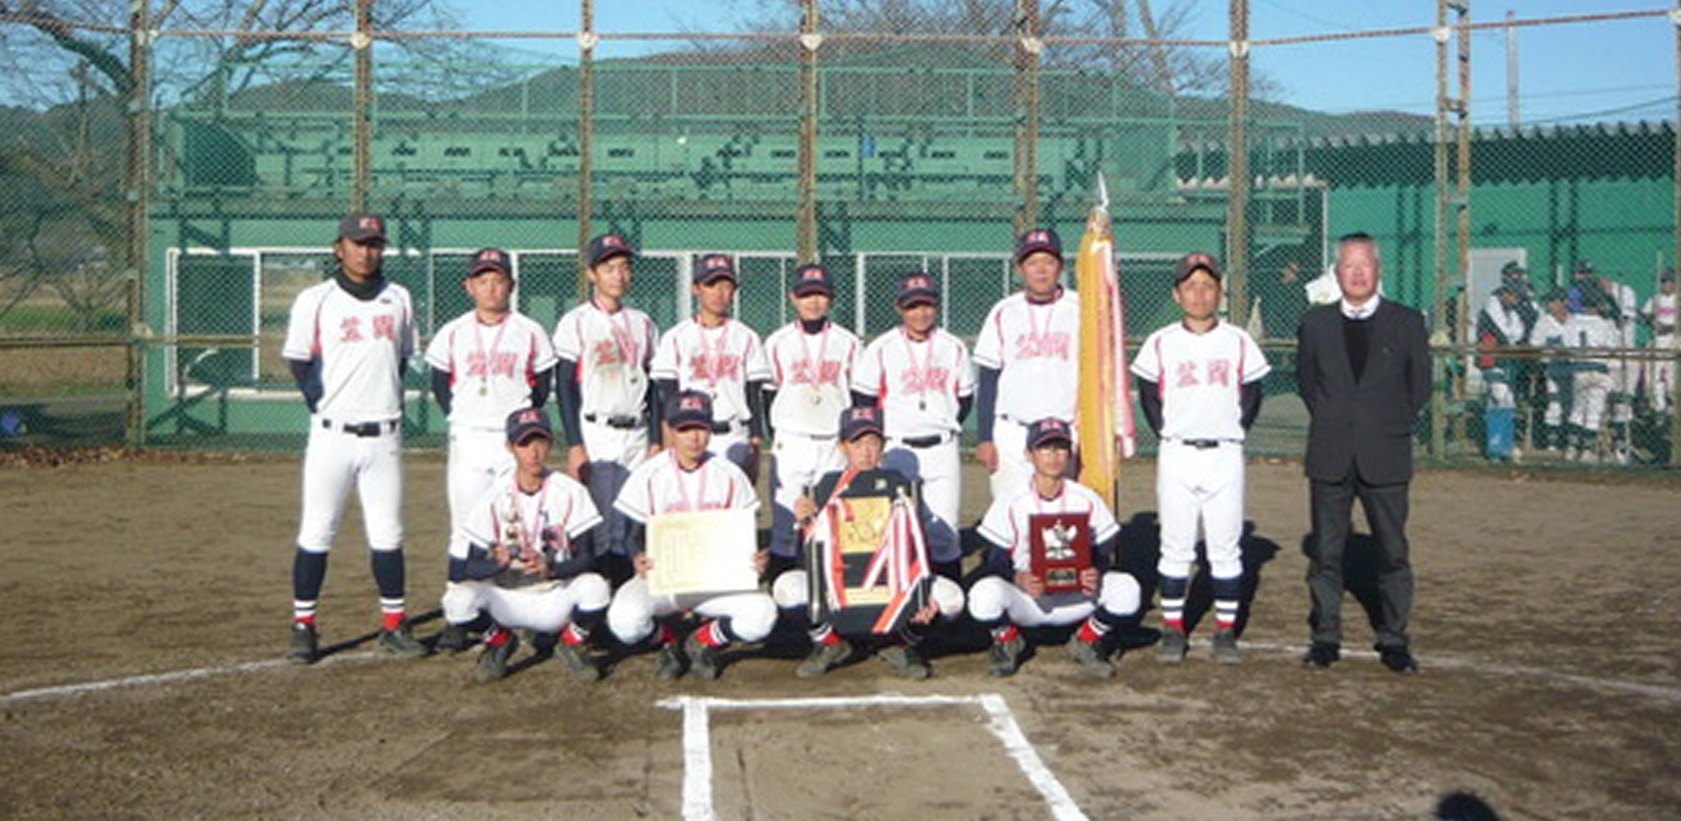 中学生野球大会「桜川市近隣中学校野球大会」